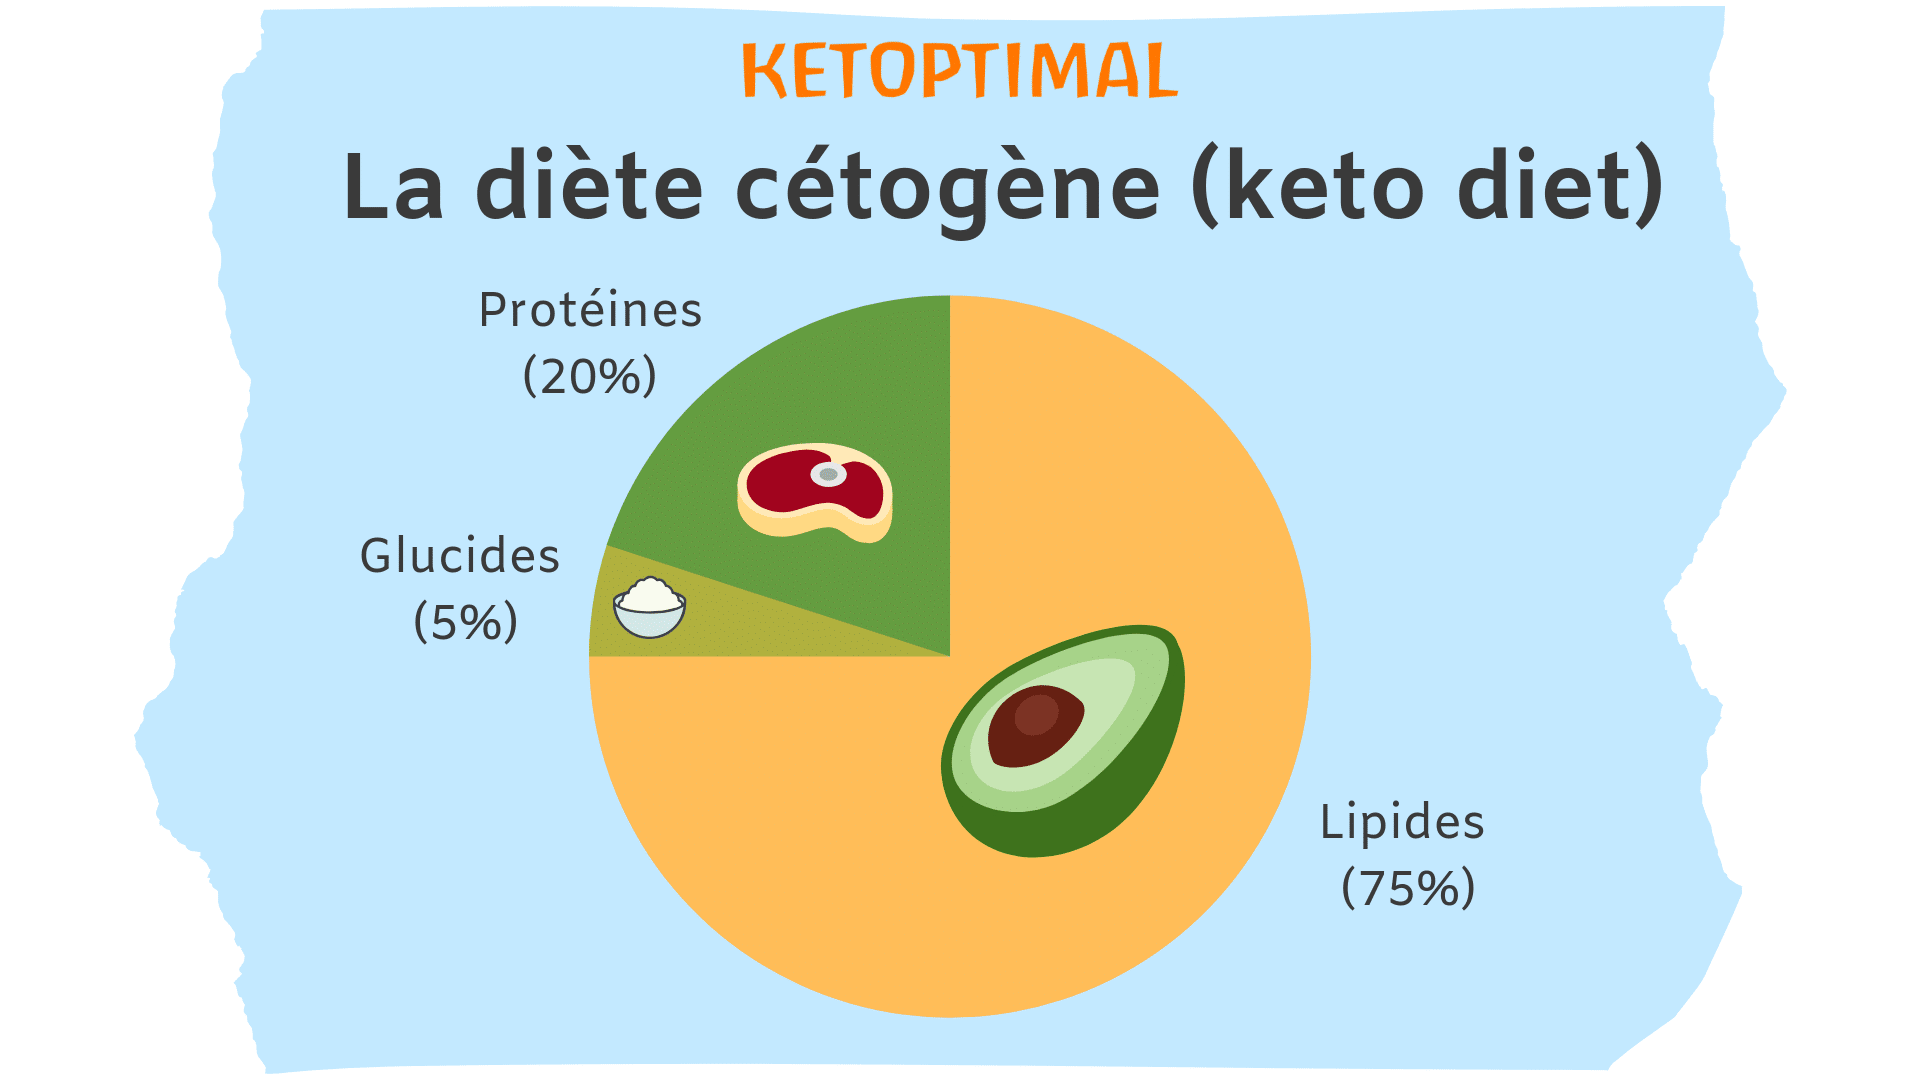 keto diet, régime keto, régime cétogène, diète keto, diète cétogène, alimentation keto, alimentation cétogène, ketoptimal